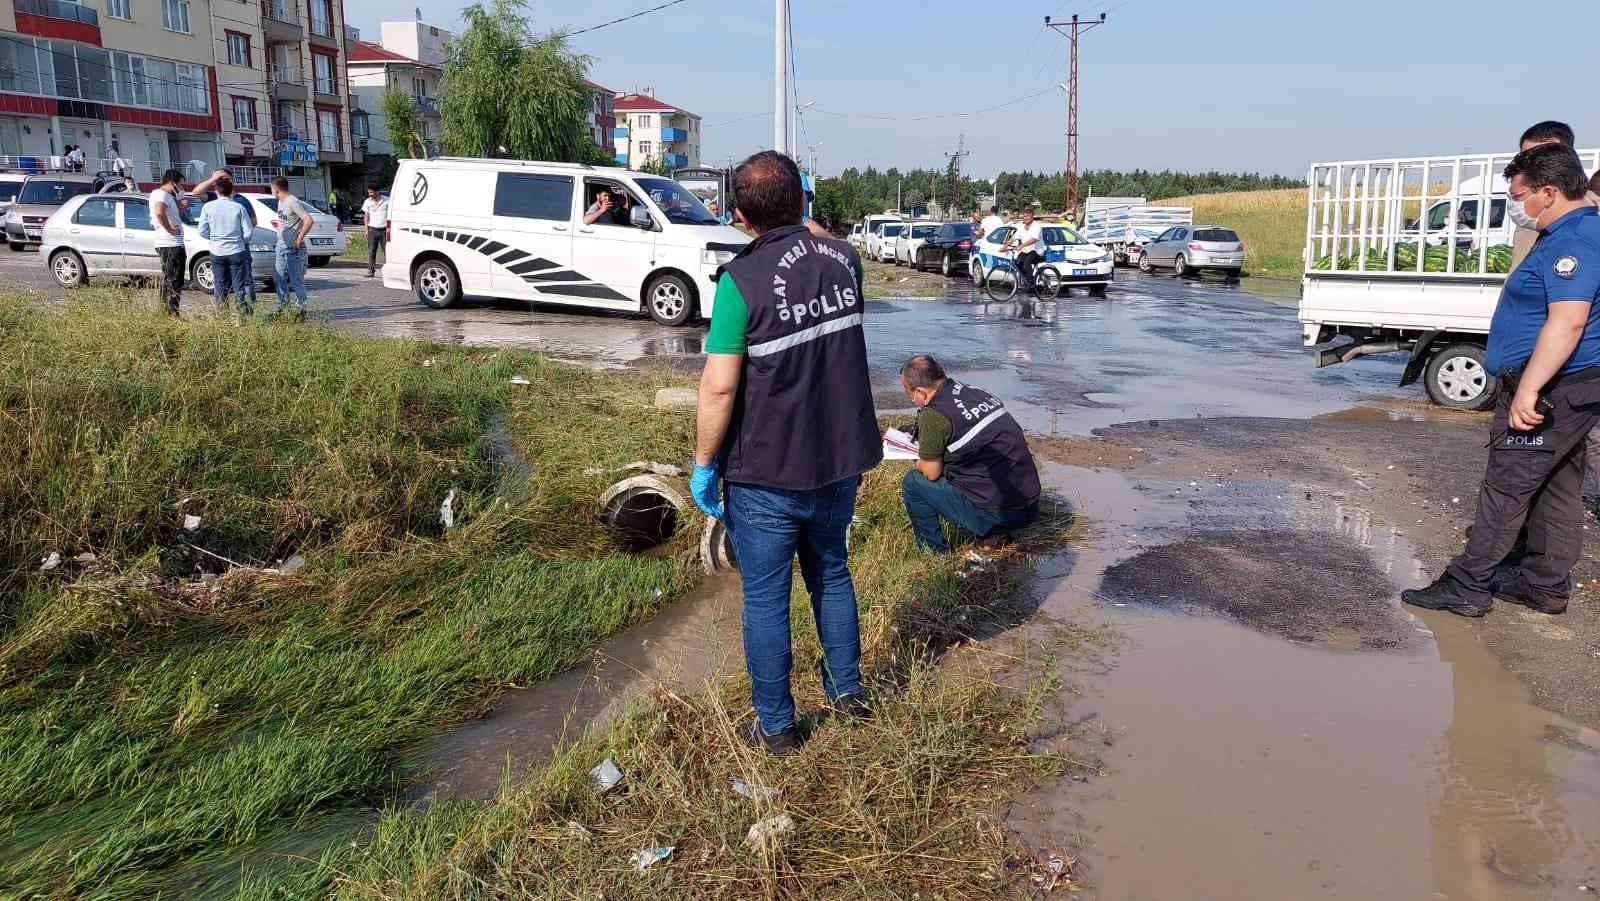 Tekirdağ’ın Ergene ilçesinde geçen yıl suya kapılan 2 çocuğun ölümüne ilişkin bilirkişi raporuna göre, Tekirdağ Büyükşehir Belediyesi ve Ergene ...